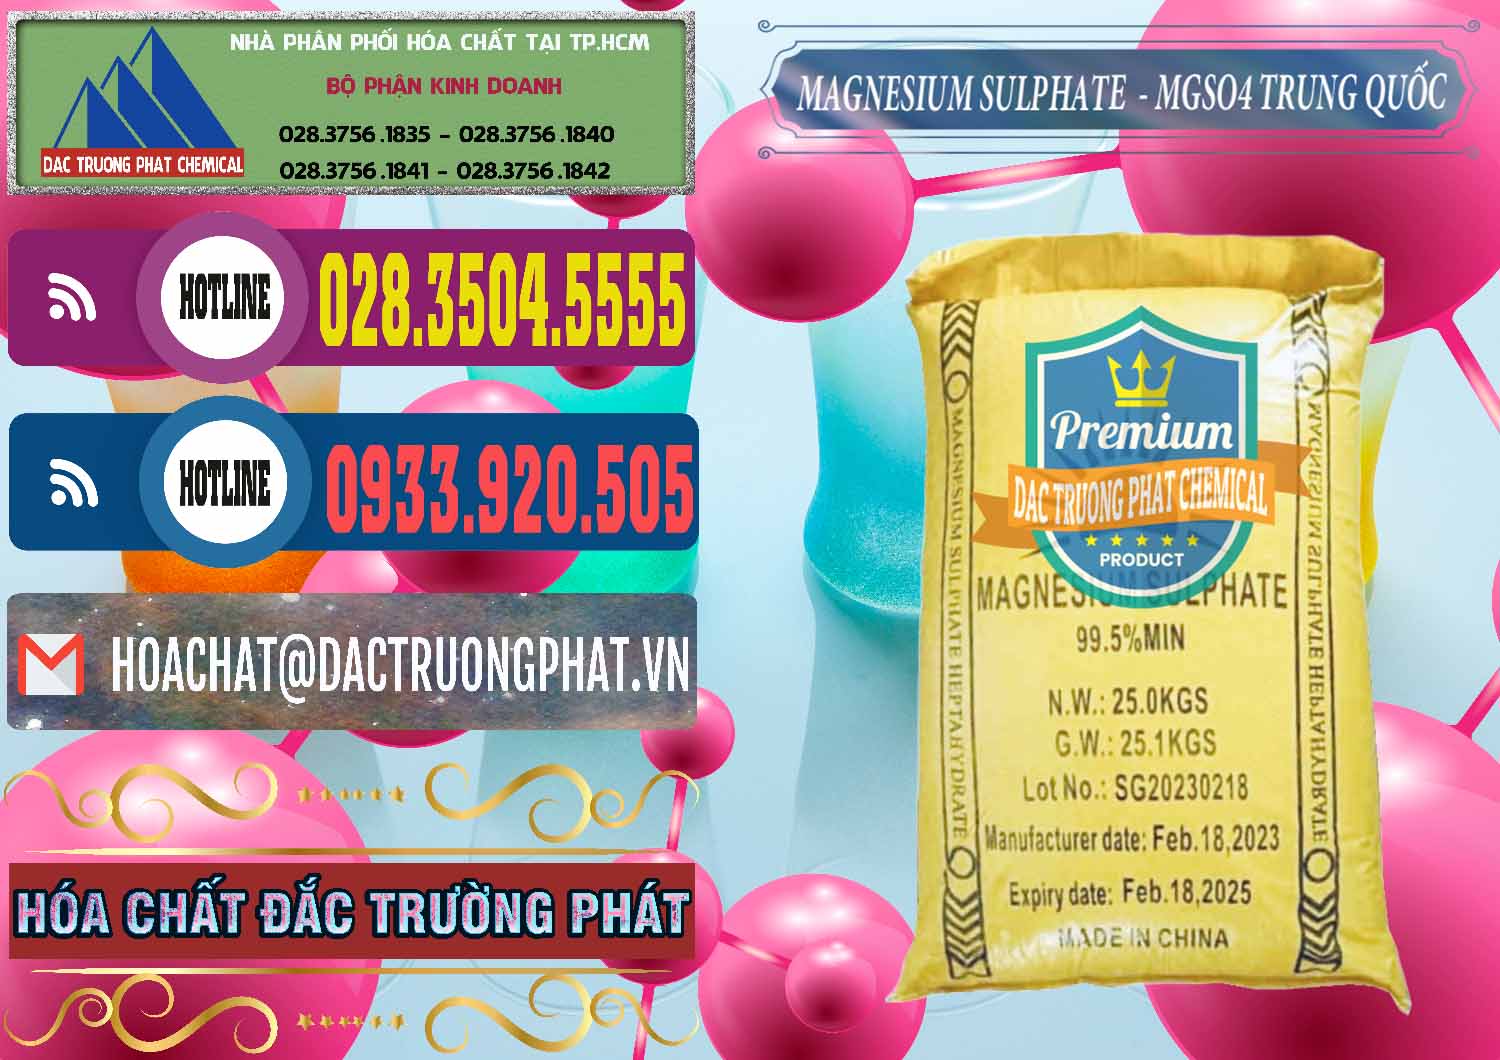 Đơn vị chuyên bán & cung cấp MGSO4.7H2O – Magnesium Sulphate Heptahydrate Logo Mặt Trời Trung Quốc China - 0391 - Nhà nhập khẩu & cung cấp hóa chất tại TP.HCM - muabanhoachat.com.vn